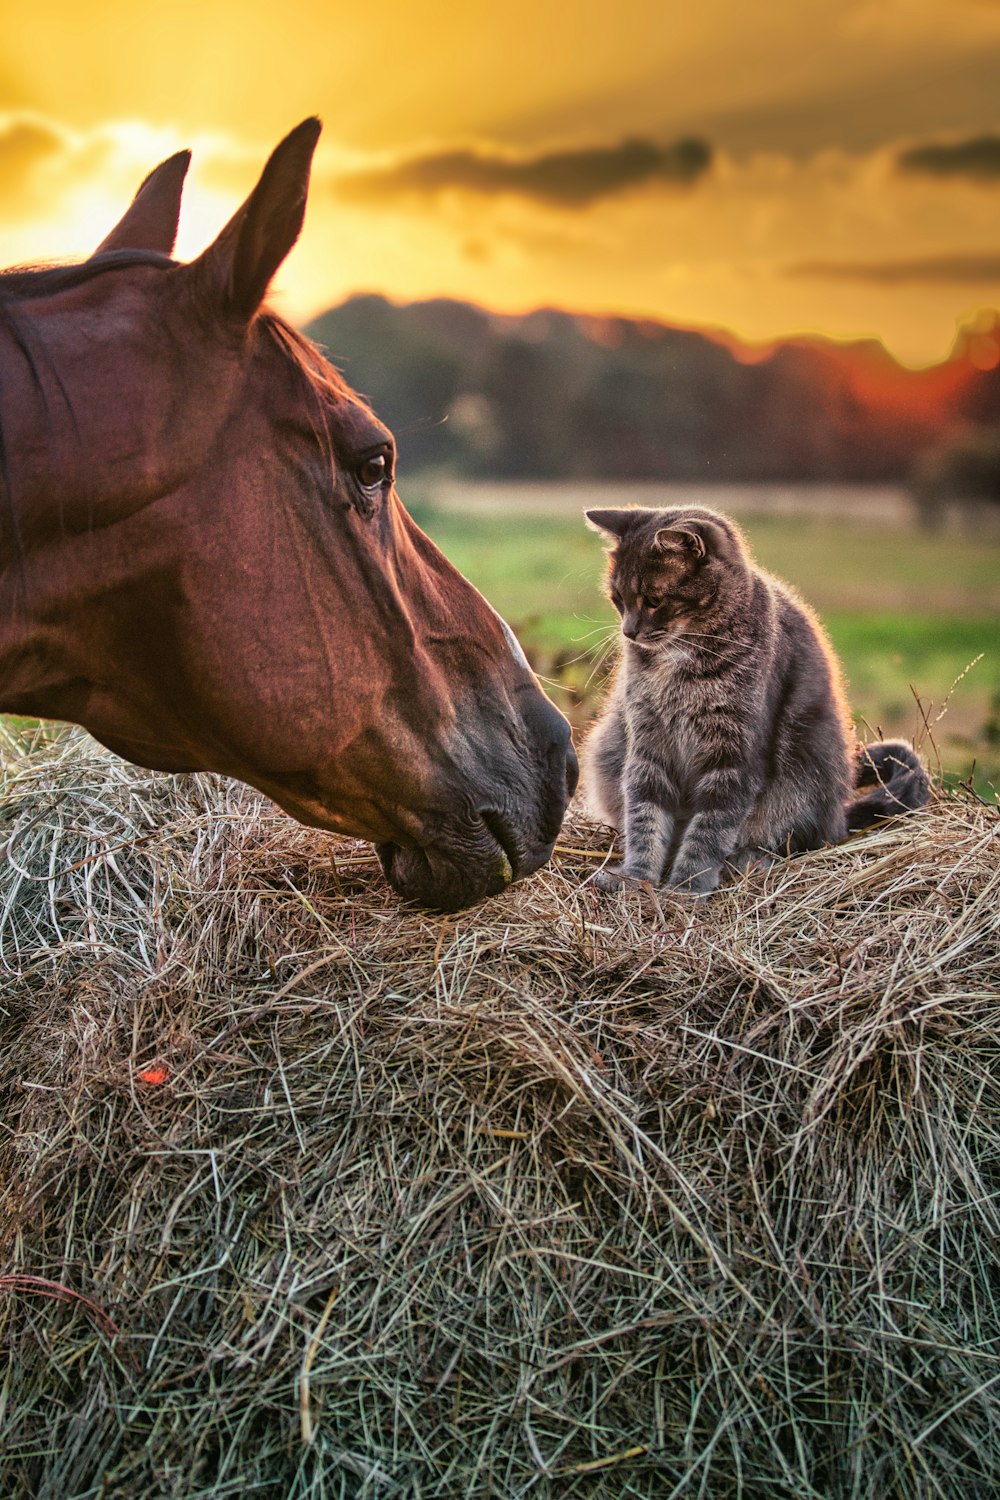 Un gatto seduto in cima a un mucchio di fieno accanto a un cavallo